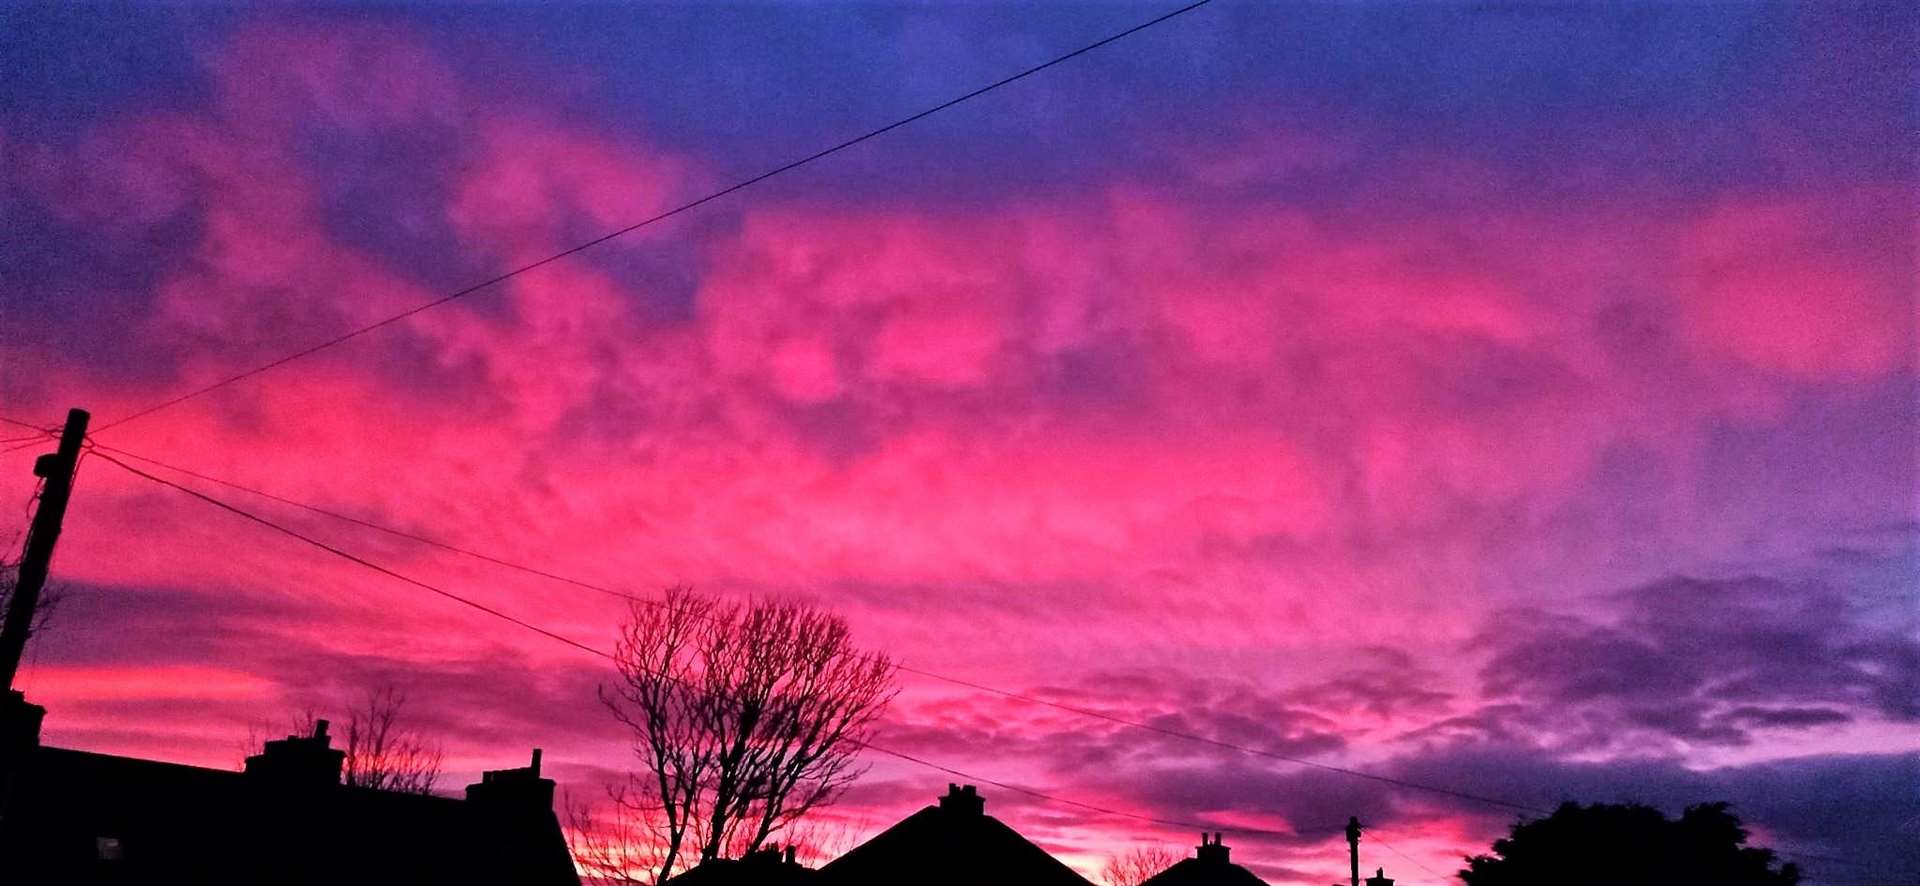 Cheriee Shepherd sent this sunset image looking over rooftops in Henrietta Street, Wick.